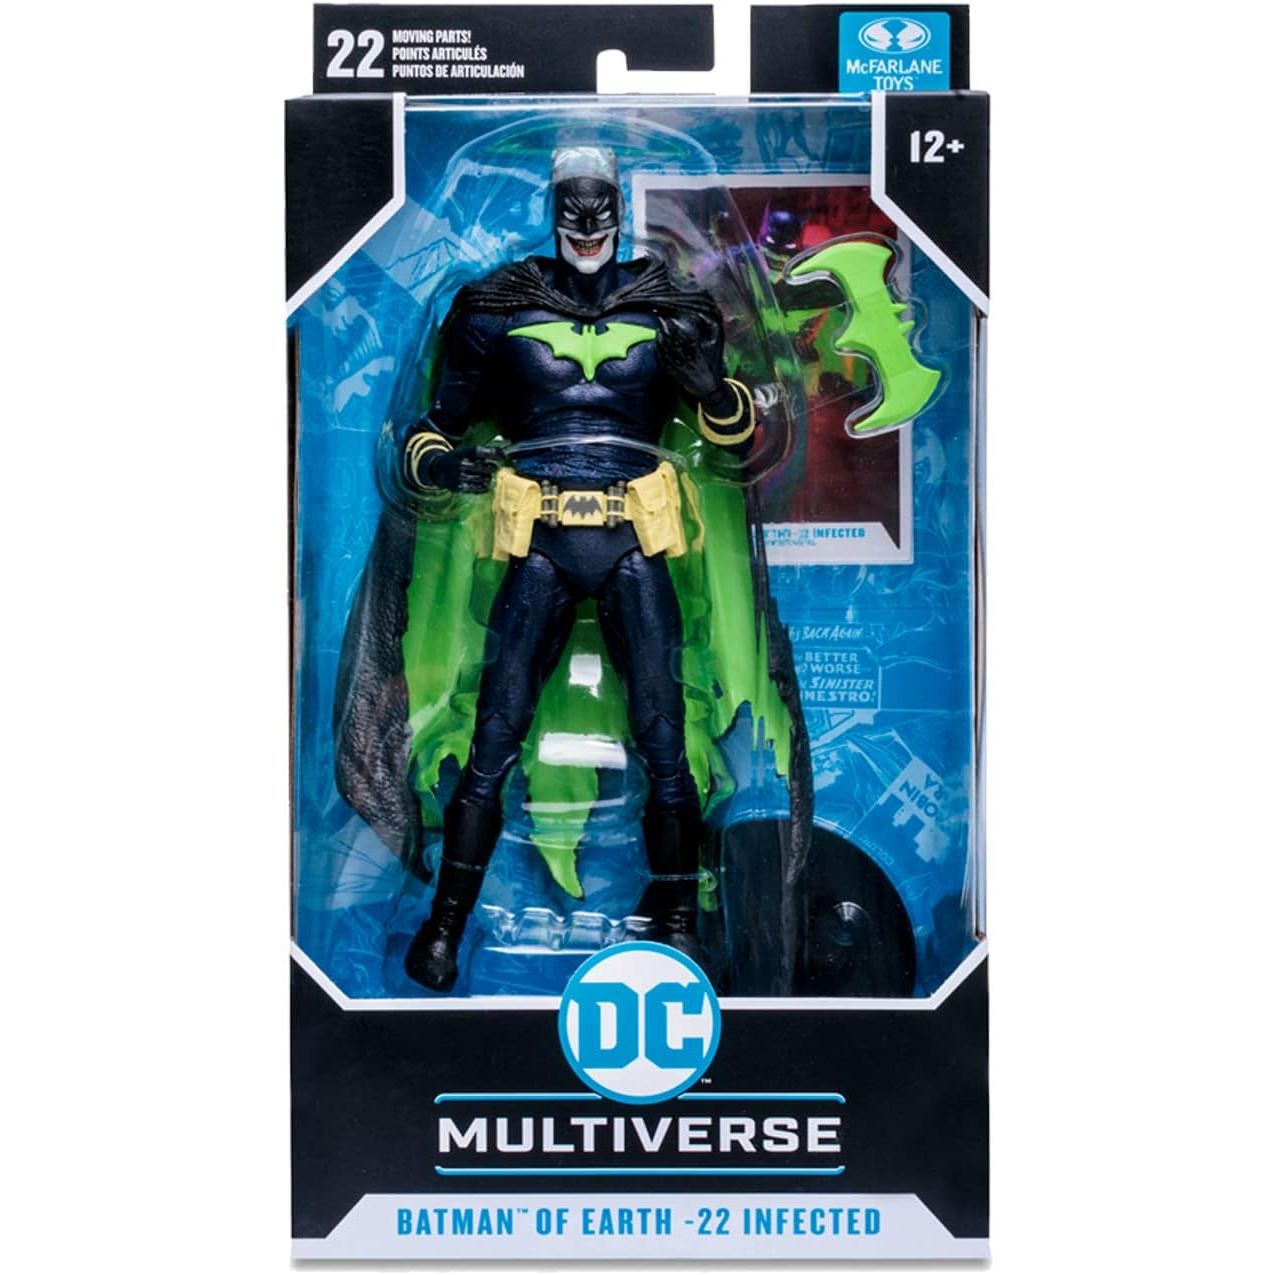 McFarlane Toys DC Multiverse Who Laughs as Batman 7